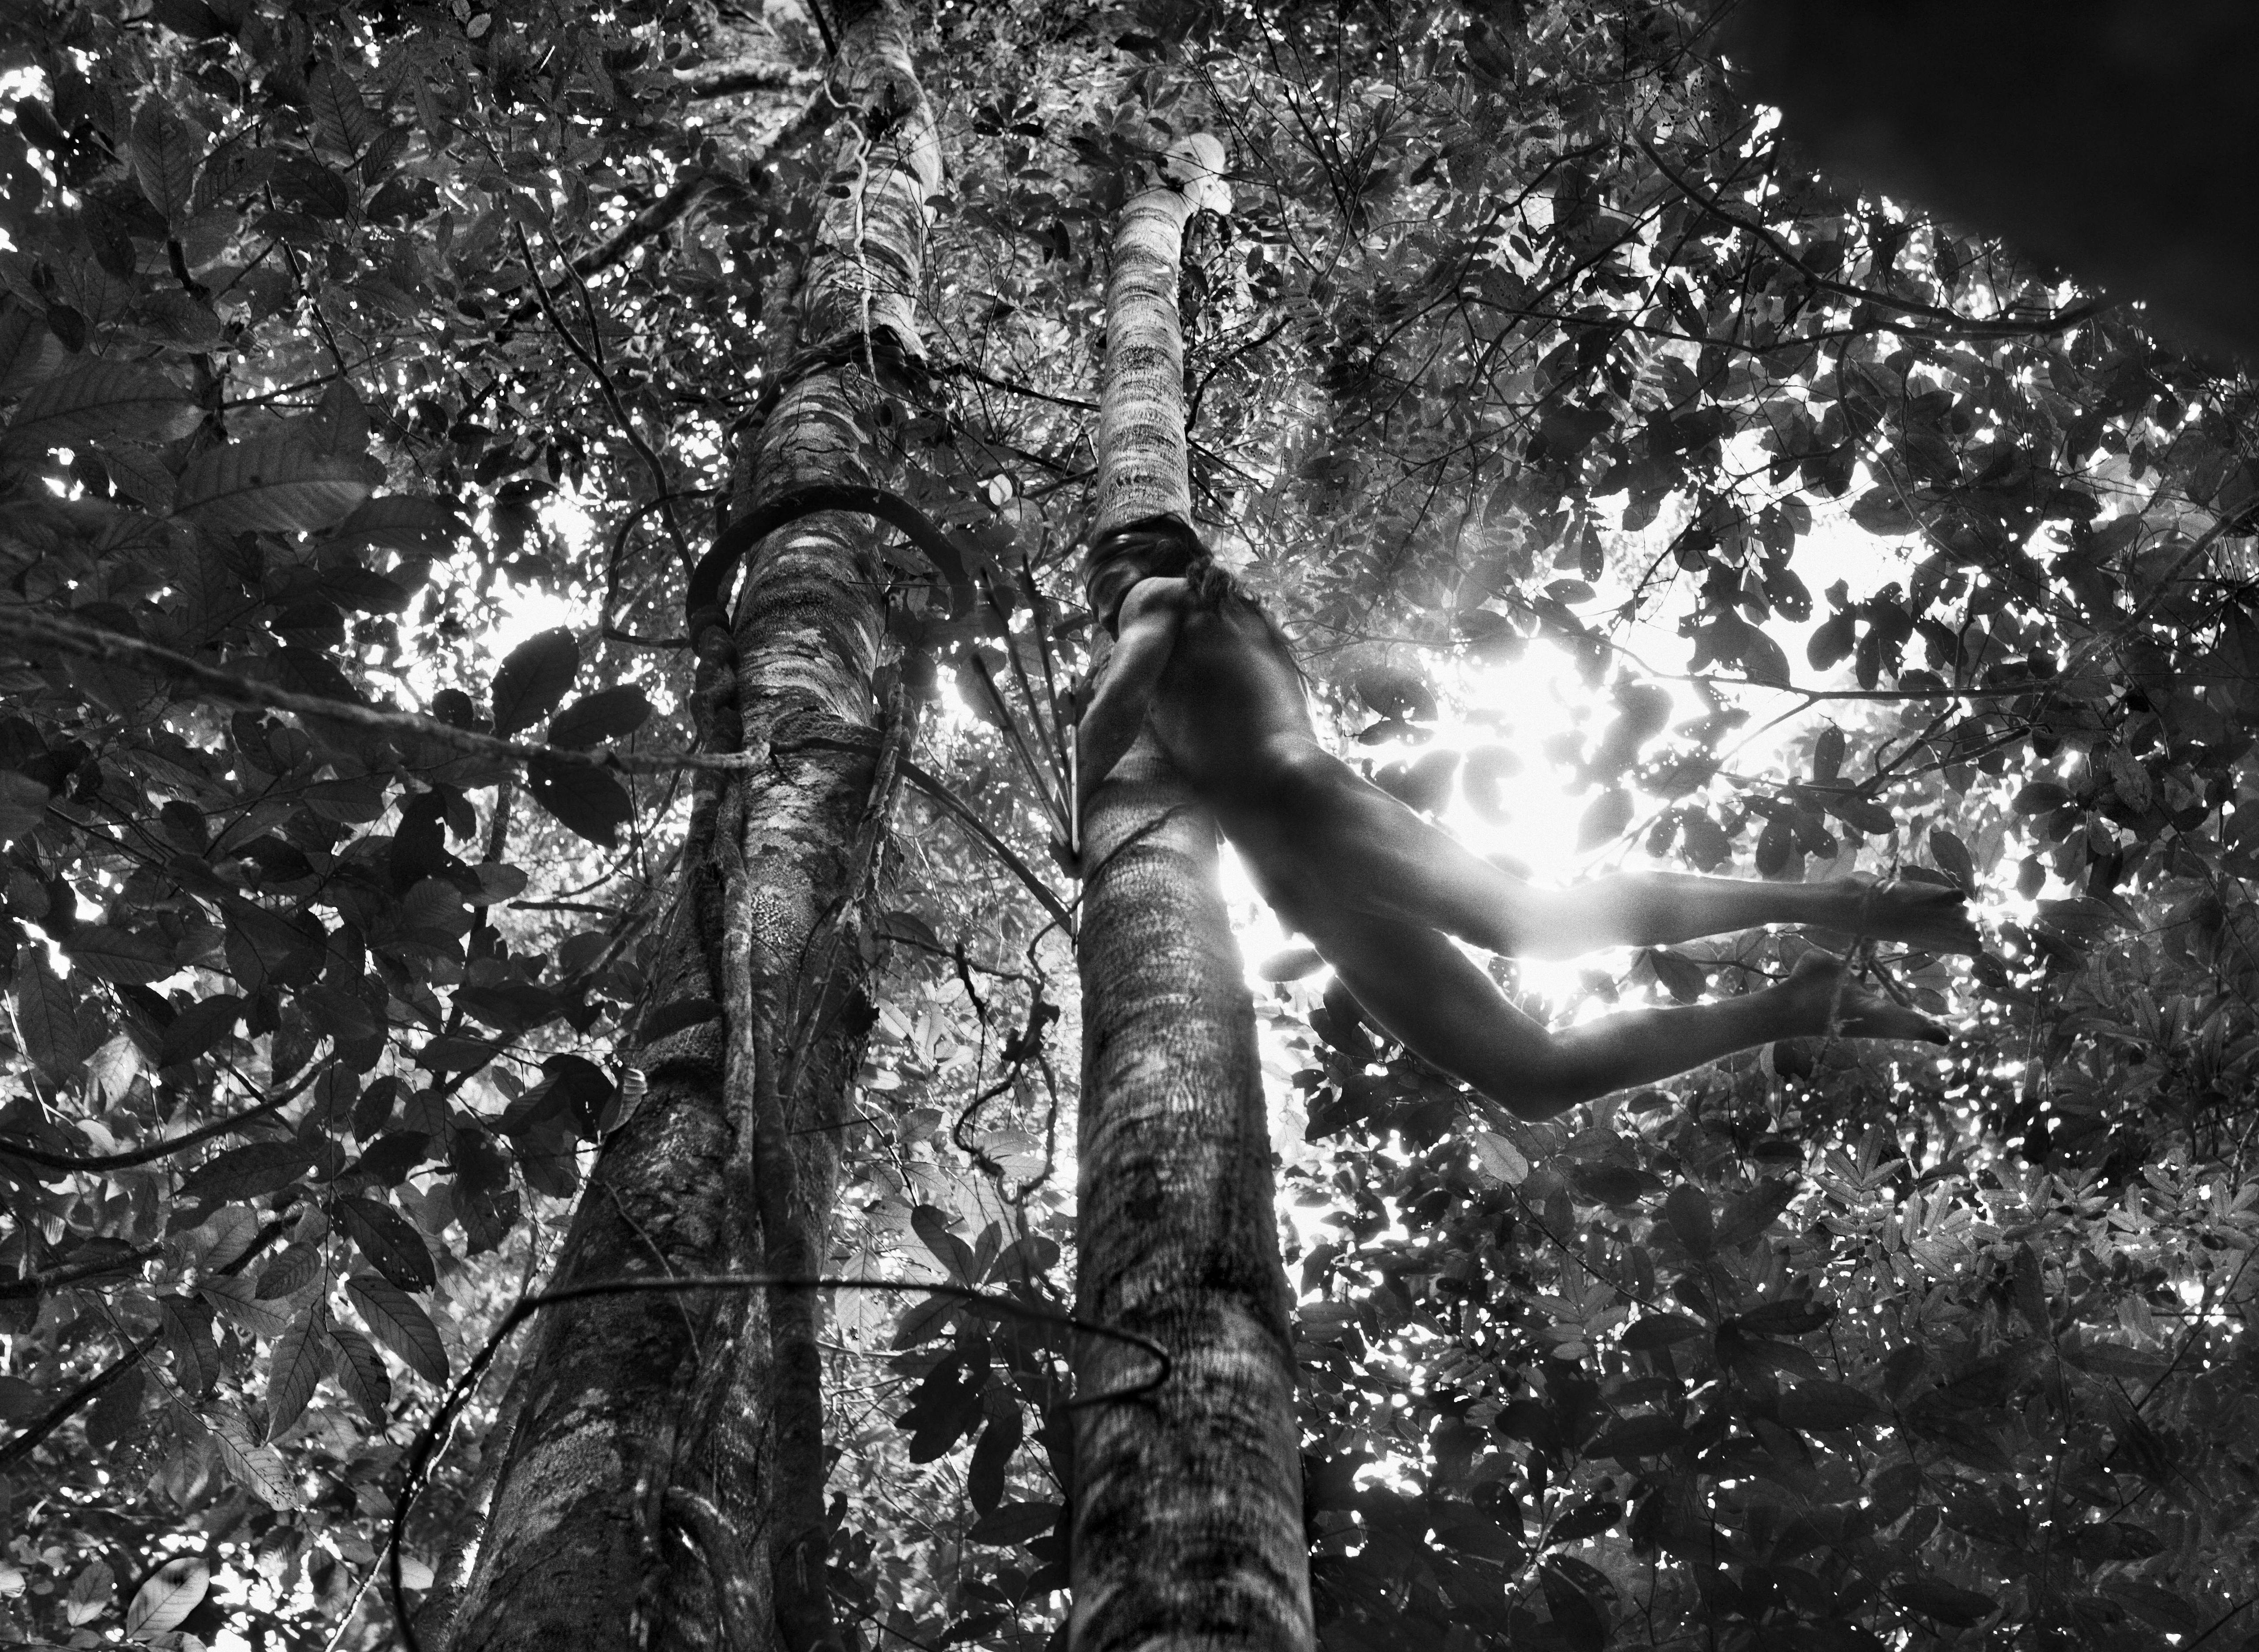 Охотник из племени Зоэ, штат Пара, Бразилия, 2009. Автор Себастьян Сальгадо